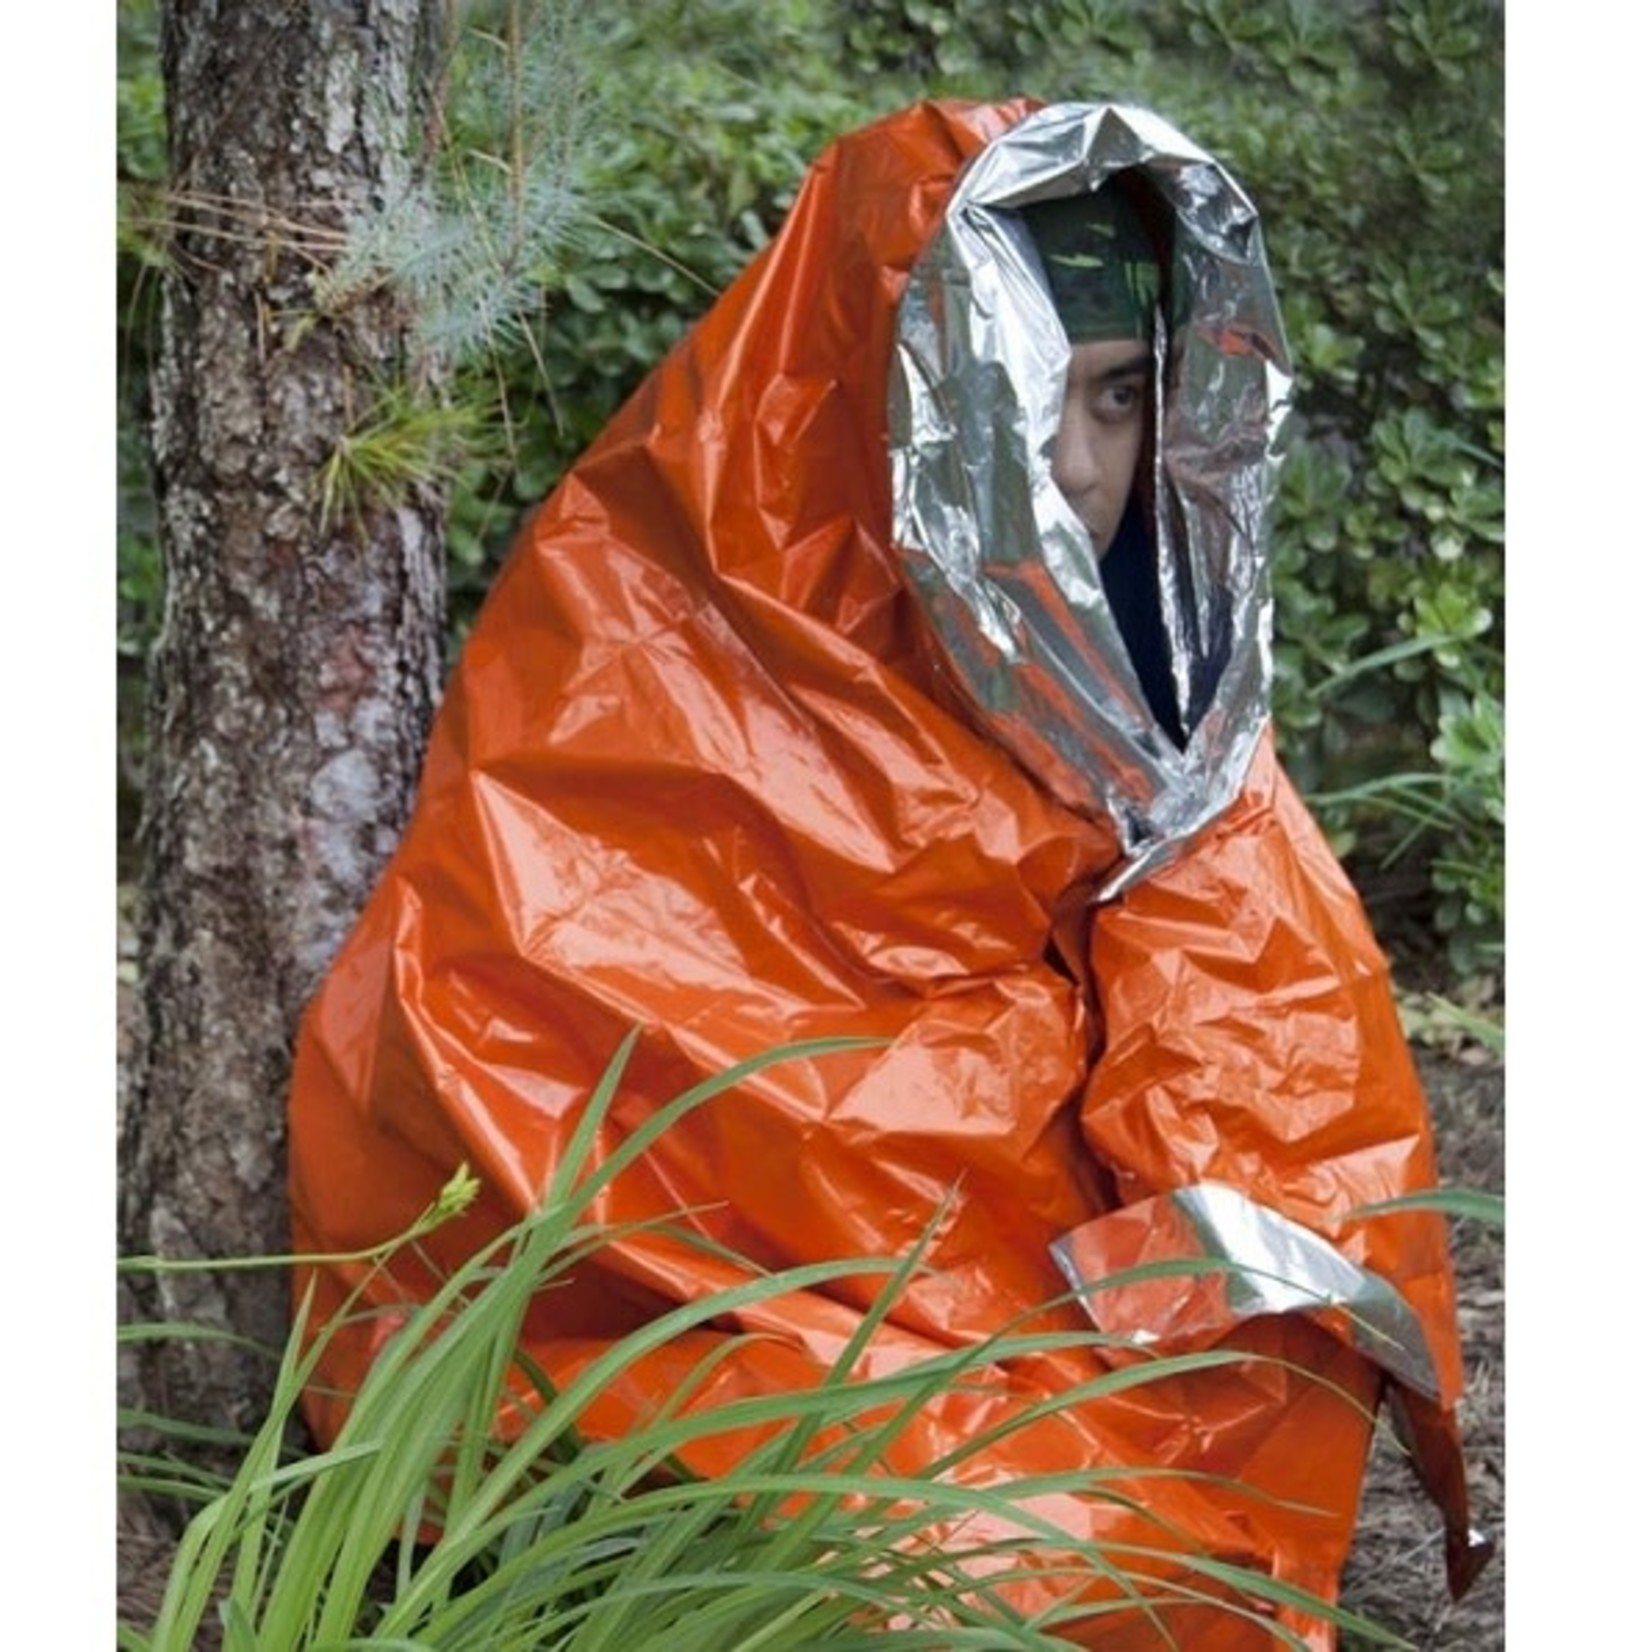 Sona SE Aluminized Orange Emergency Blanket - 83"x61"